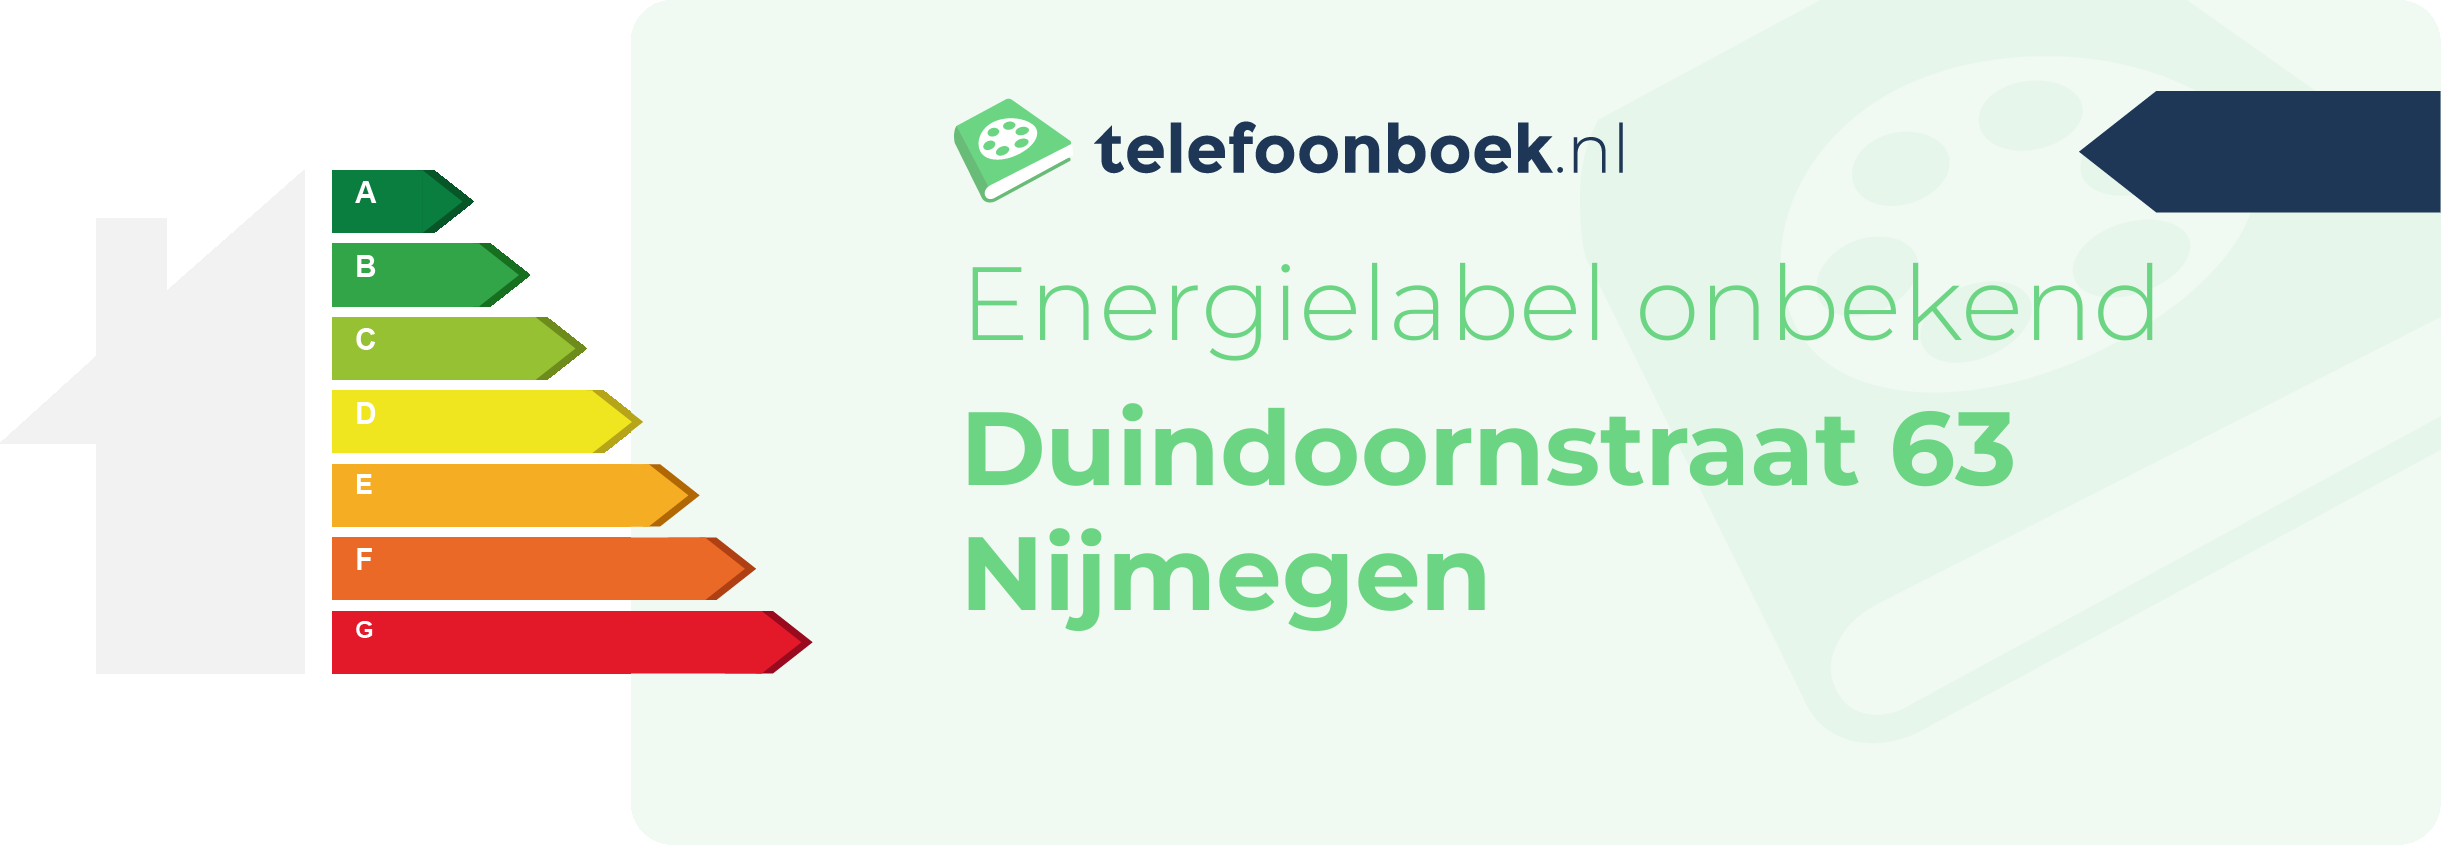 Energielabel Duindoornstraat 63 Nijmegen